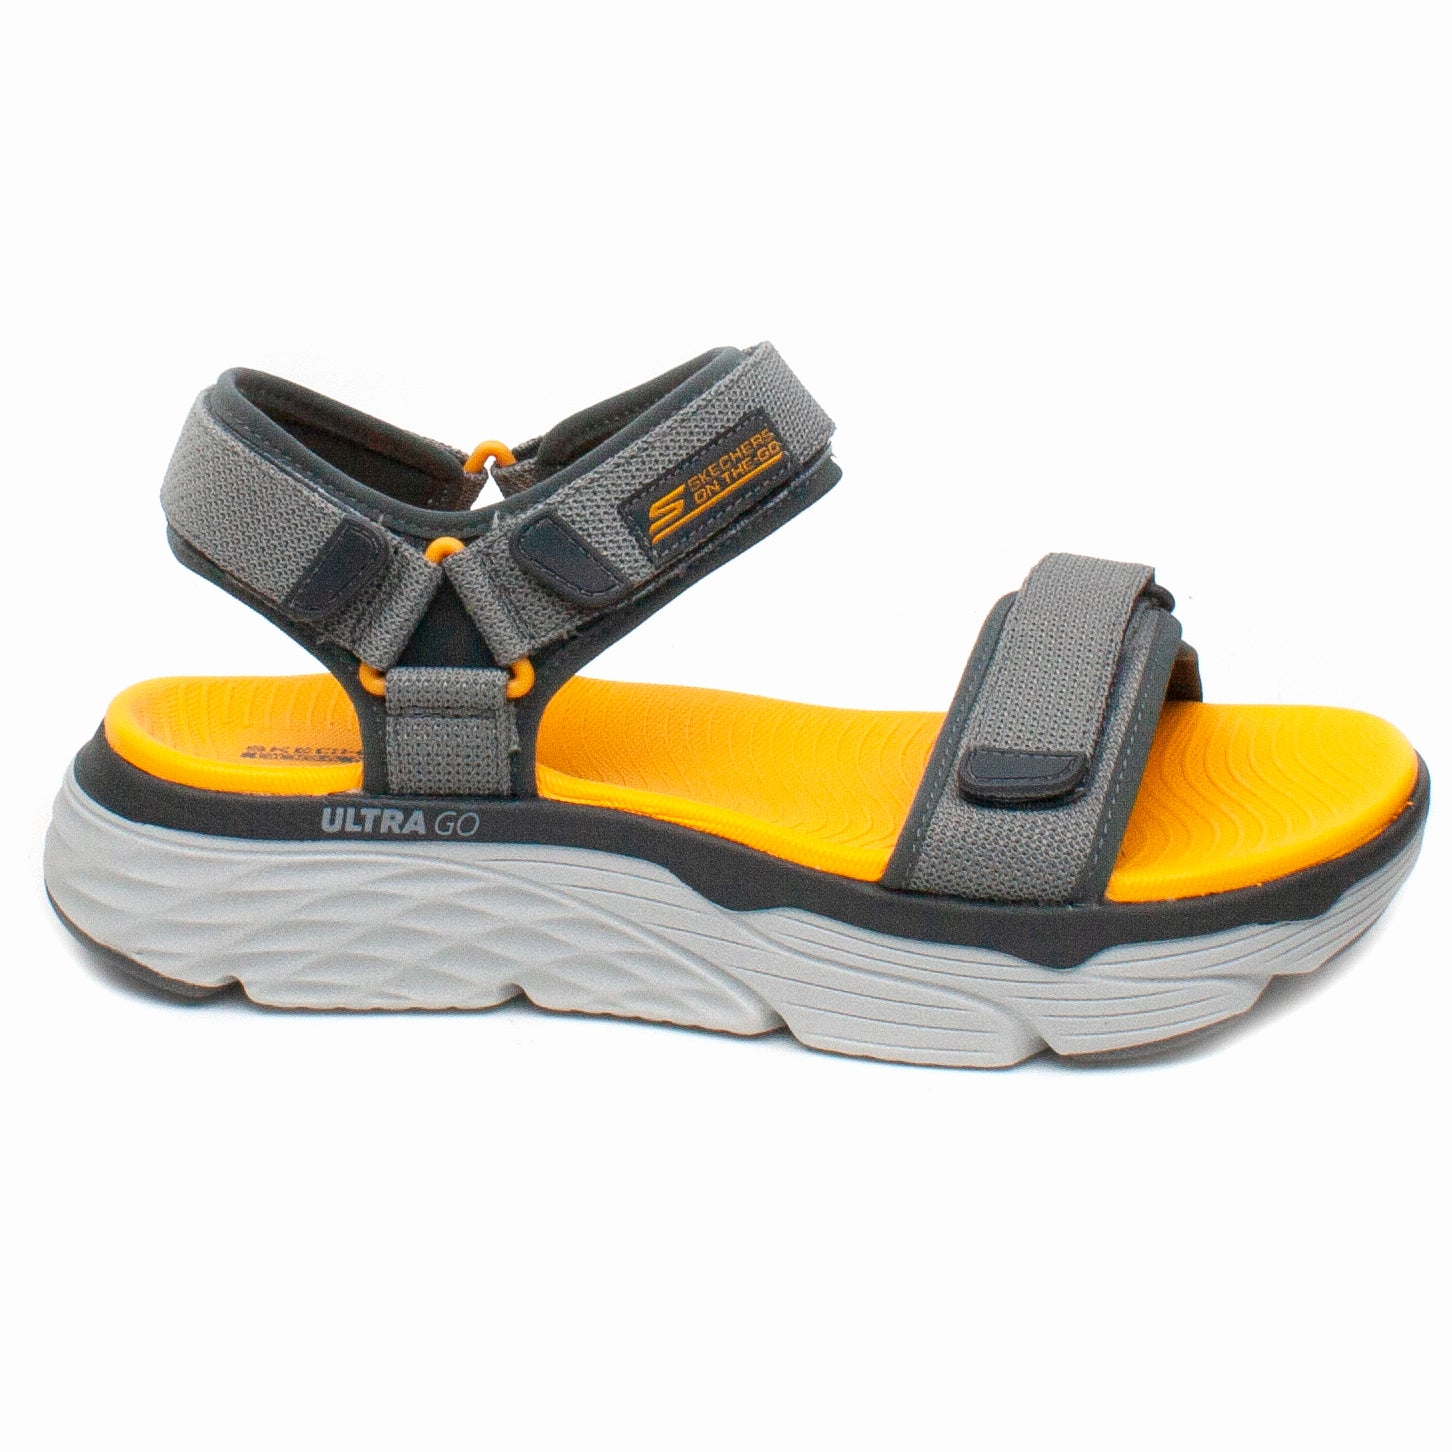 Skechers Sandale barbati 229010 gri IB2254-GRI